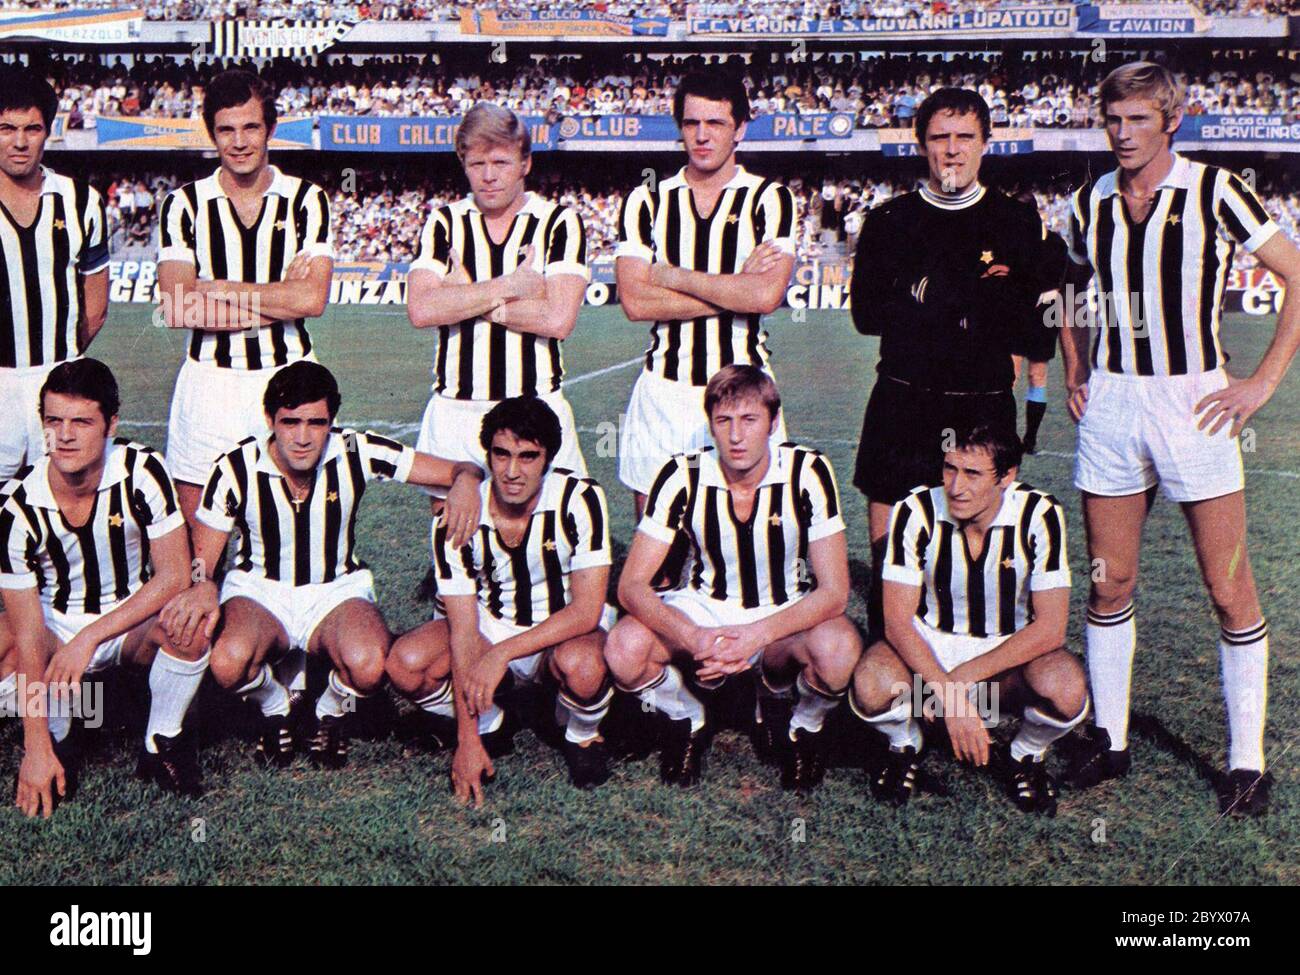 De gauche à droite, debout: S. Salvadore (capitaine), L. Spinosi, H. Haller, R. Bettega, R. Tancredi, F. Morini; croupié: F. Capello, A. Cuccureddu, P. Anastasi, G. Marchetti, G. Furino Banque D'Images